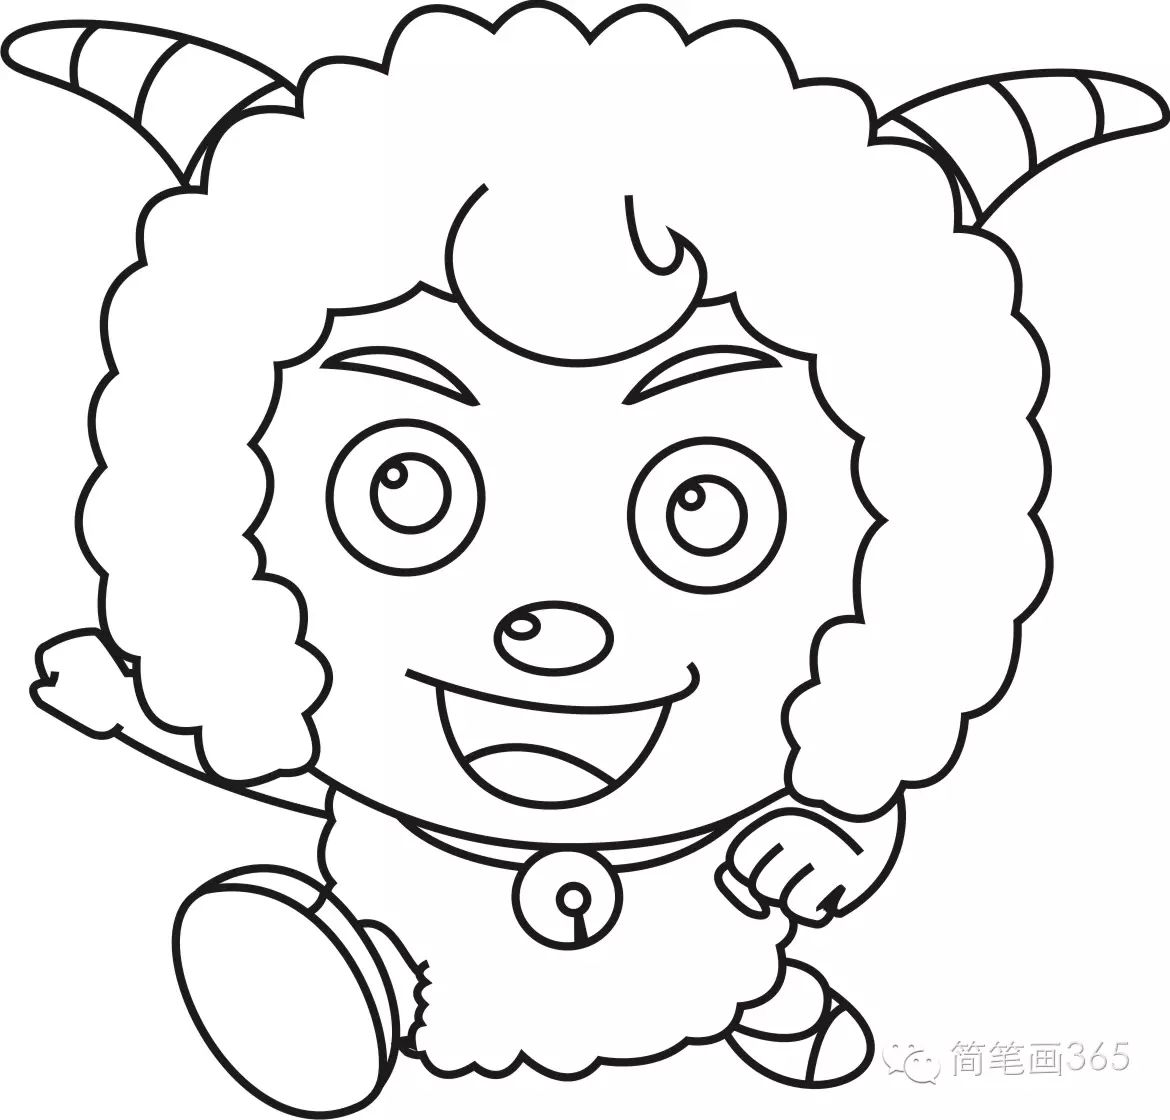 简笔画动画人物之-喜羊羊,美羊羊